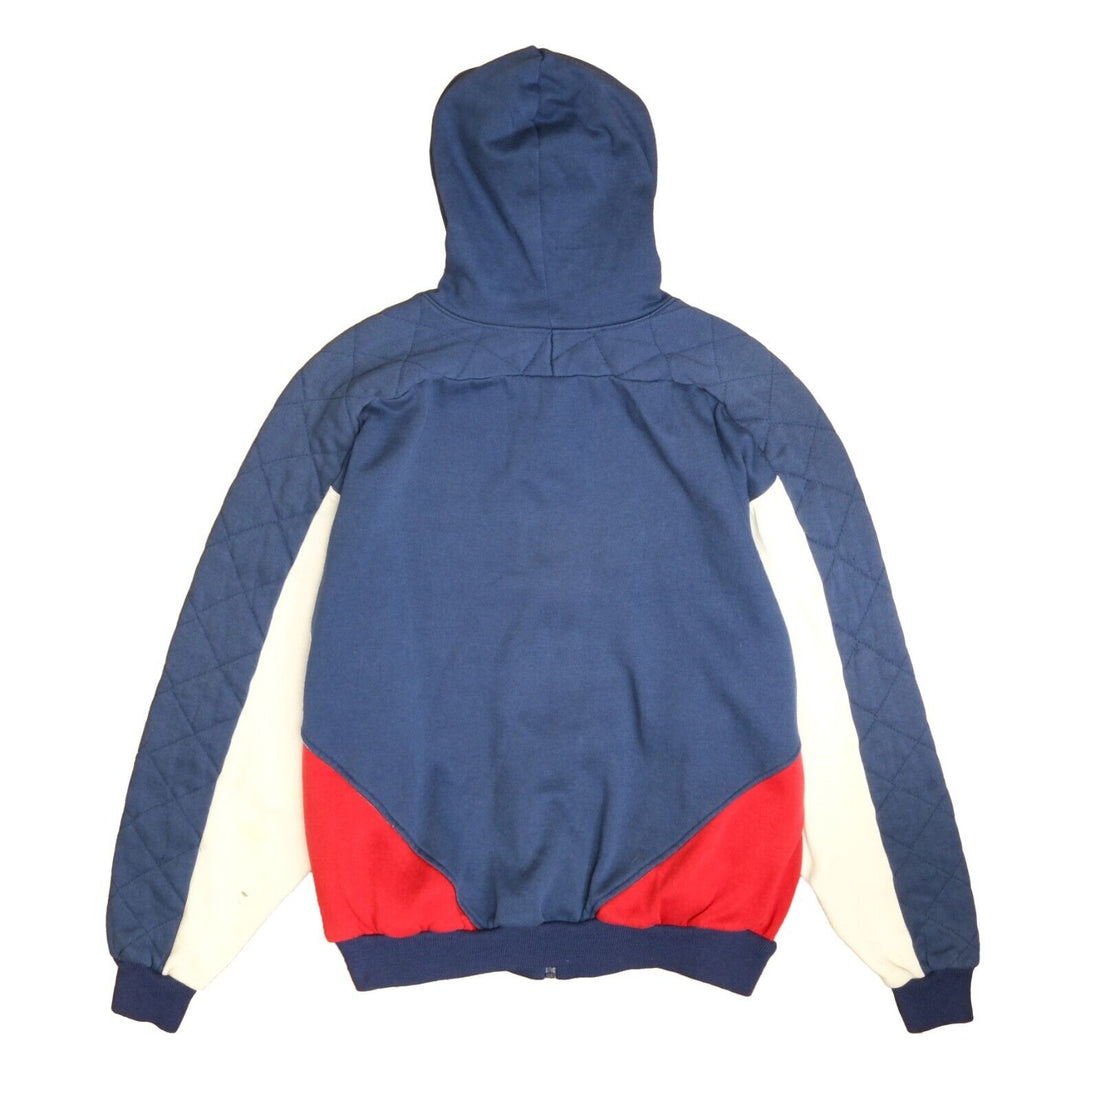 Vintage Nike Full Zip Sweatshirt Hoodie Size Large Blue Red 80s 90s